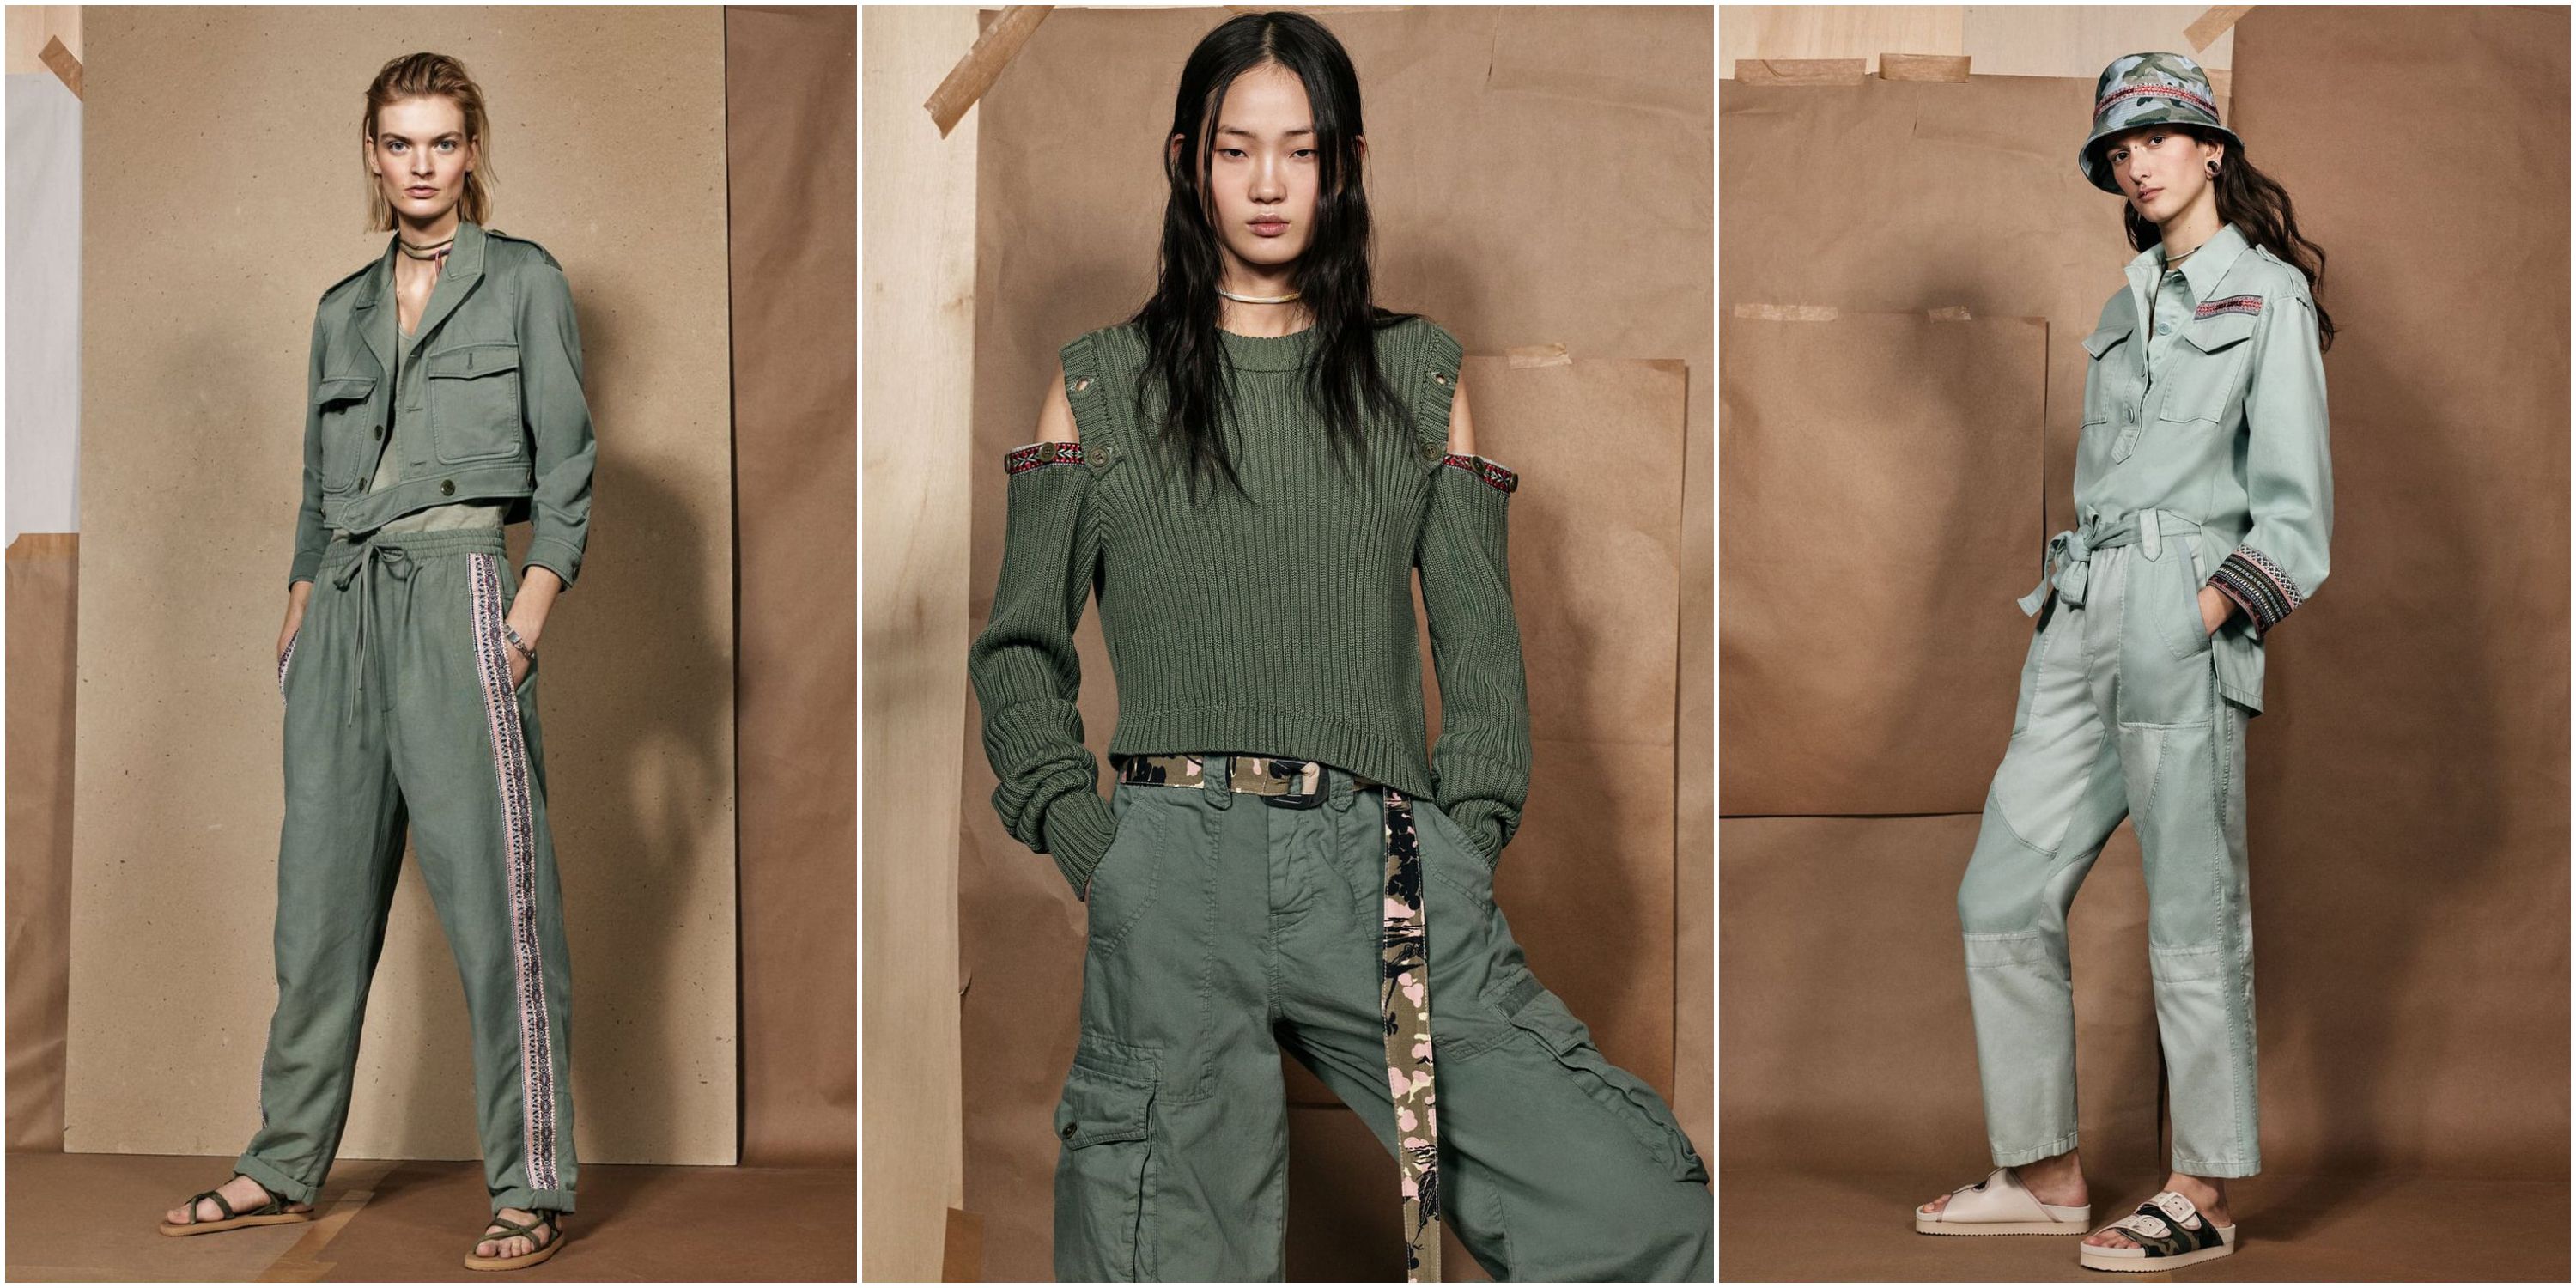 Lo nuevo de Zara va a hacer que quieras vestir la tendencia militar todo el verano - Zara SPRLS convierte la tendencia militar en el 'must' inesperado del verano